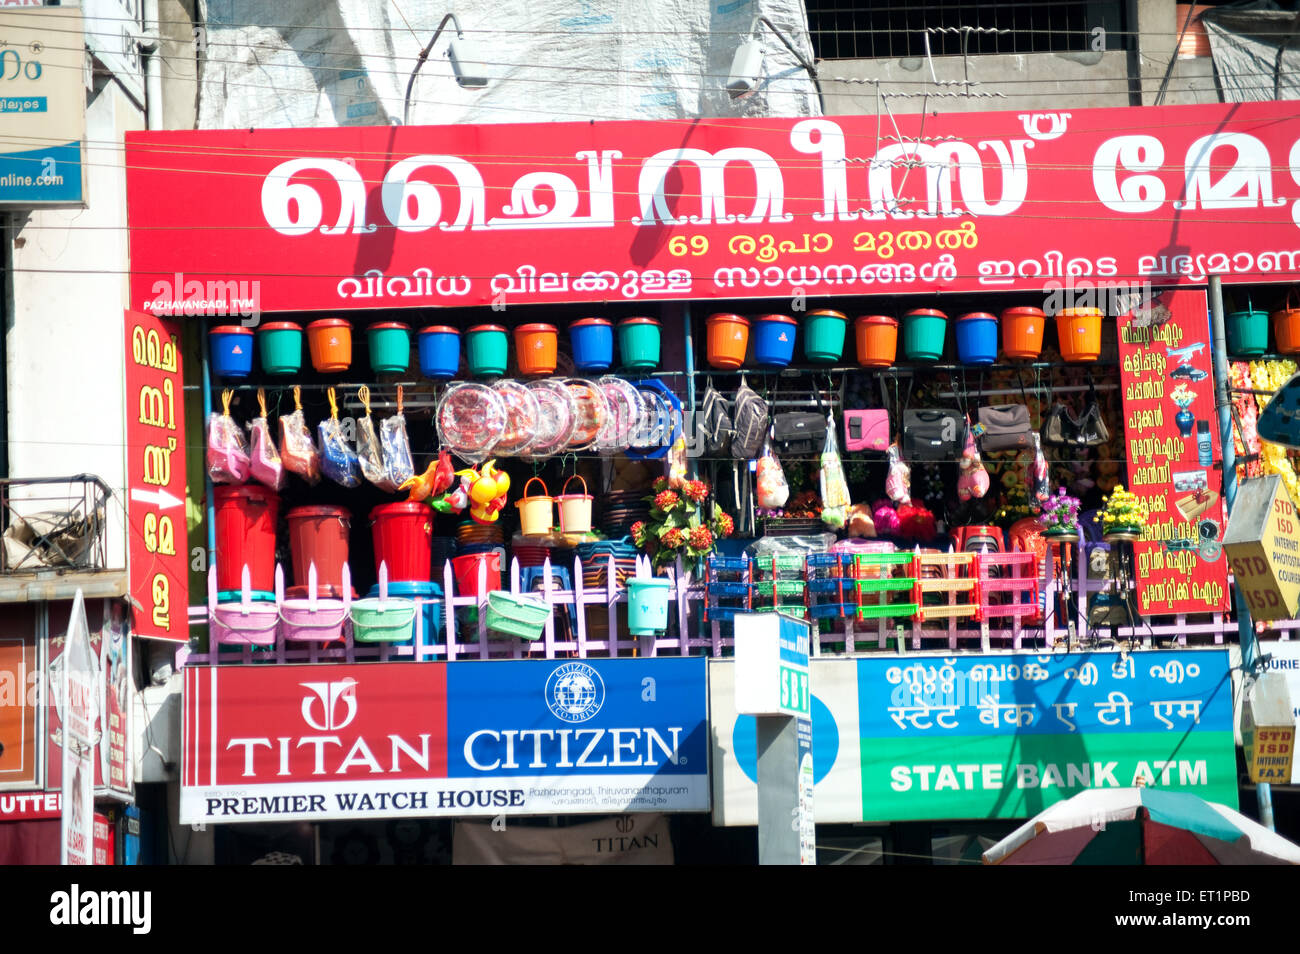 Negozio di articoli in plastica ; Orologi da Titan ; Orologi da cittadino ; Banca di Stato ATM ; Trivandrum ; Thiruvananthapuram ; Kerala ; India ; Asia Foto Stock